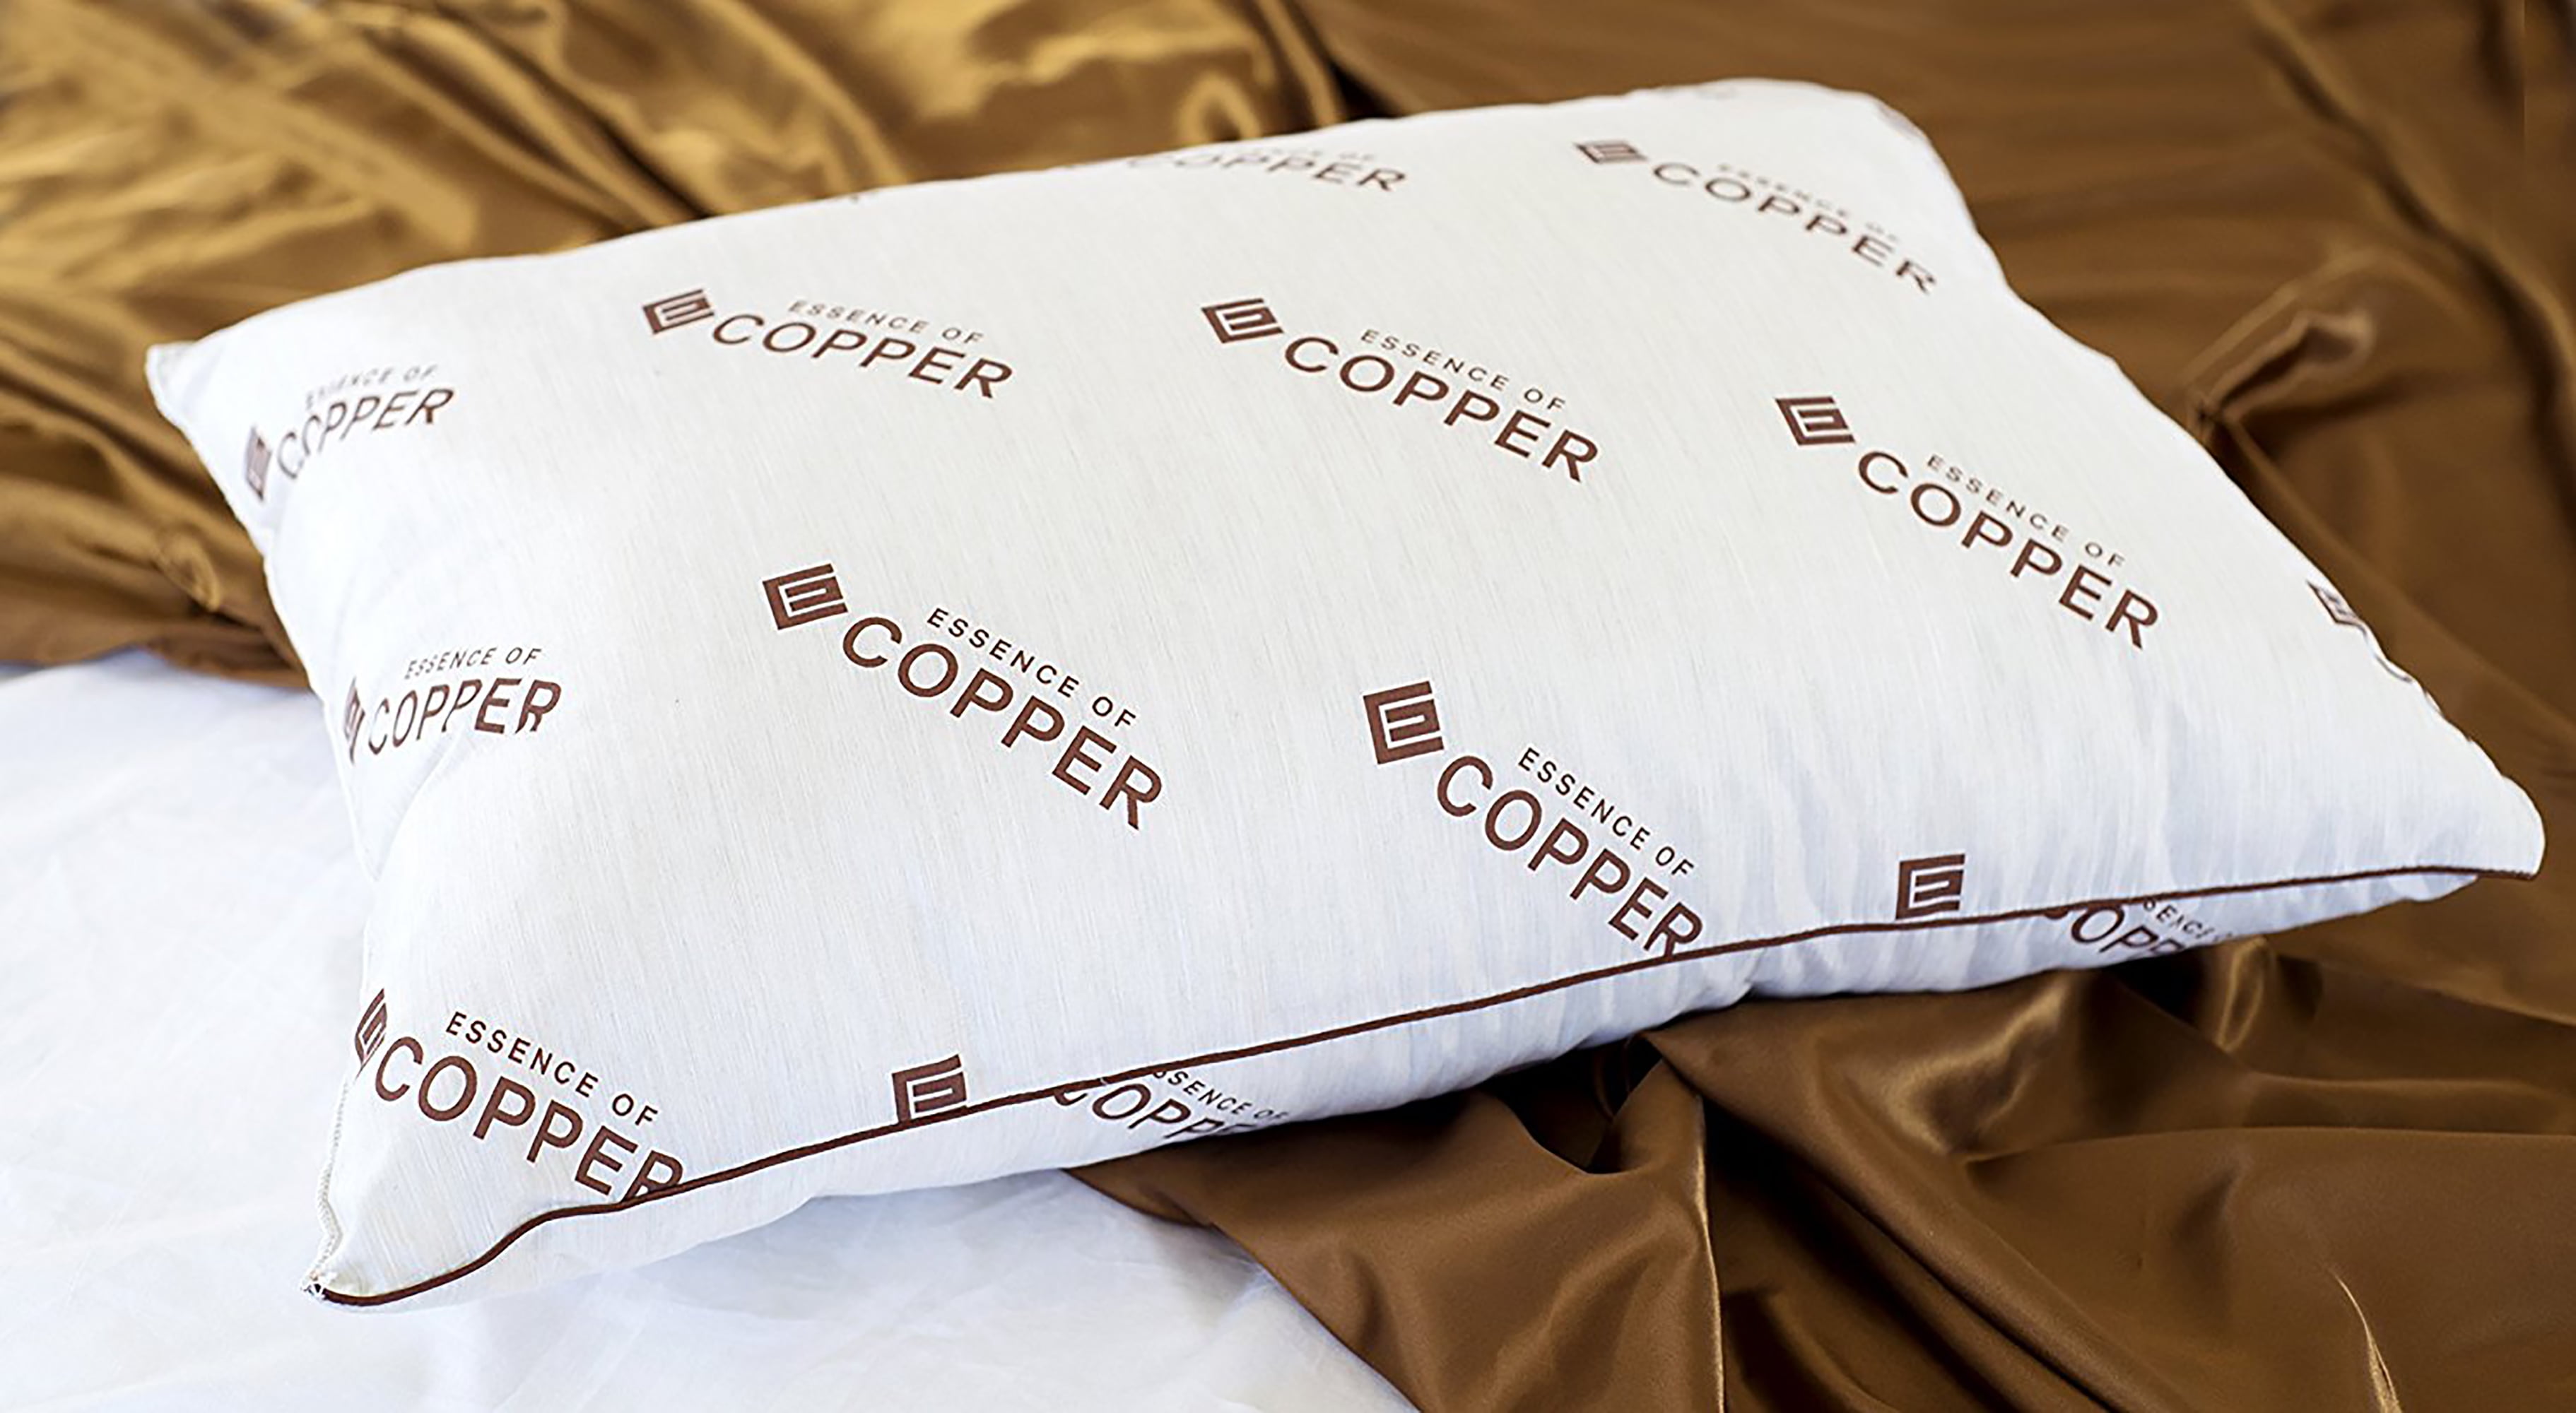 copper pillows at walmart